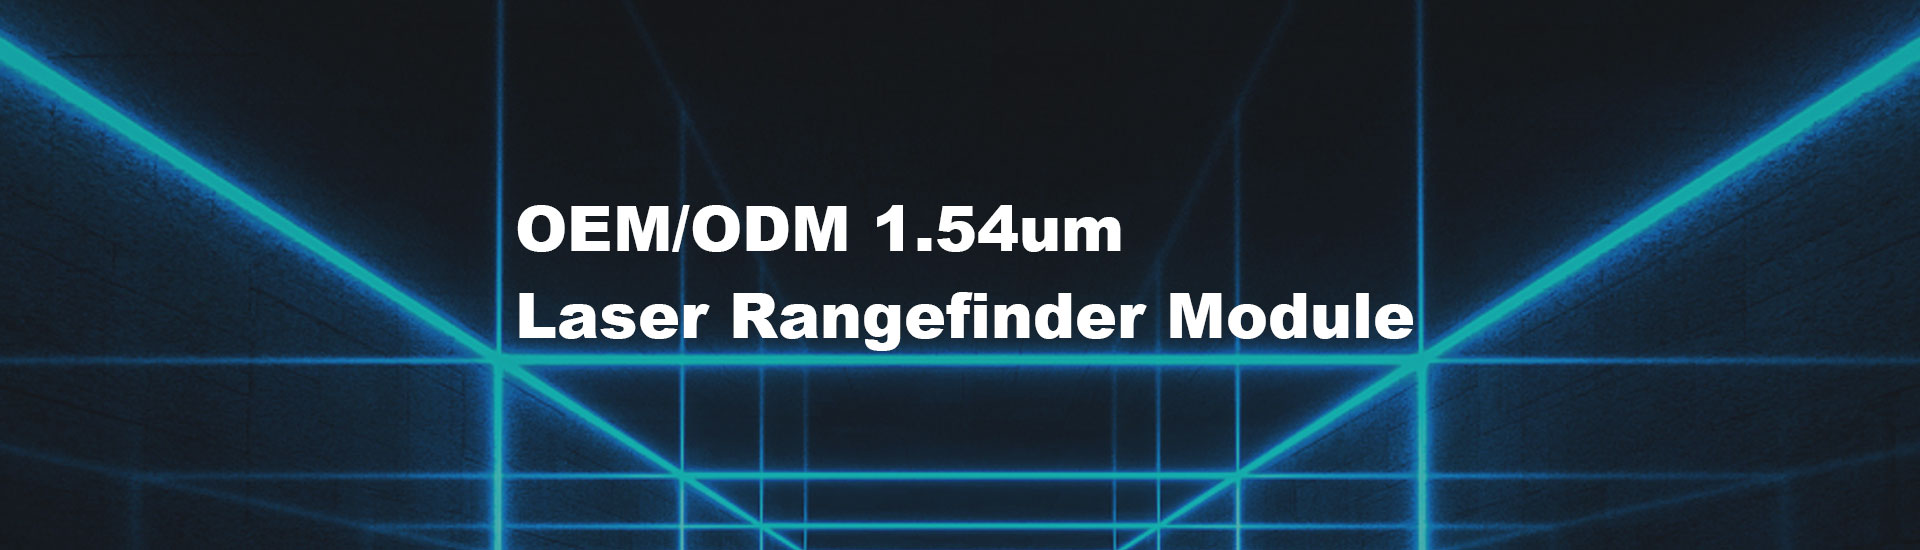 3km  Laser Rangefinder Module